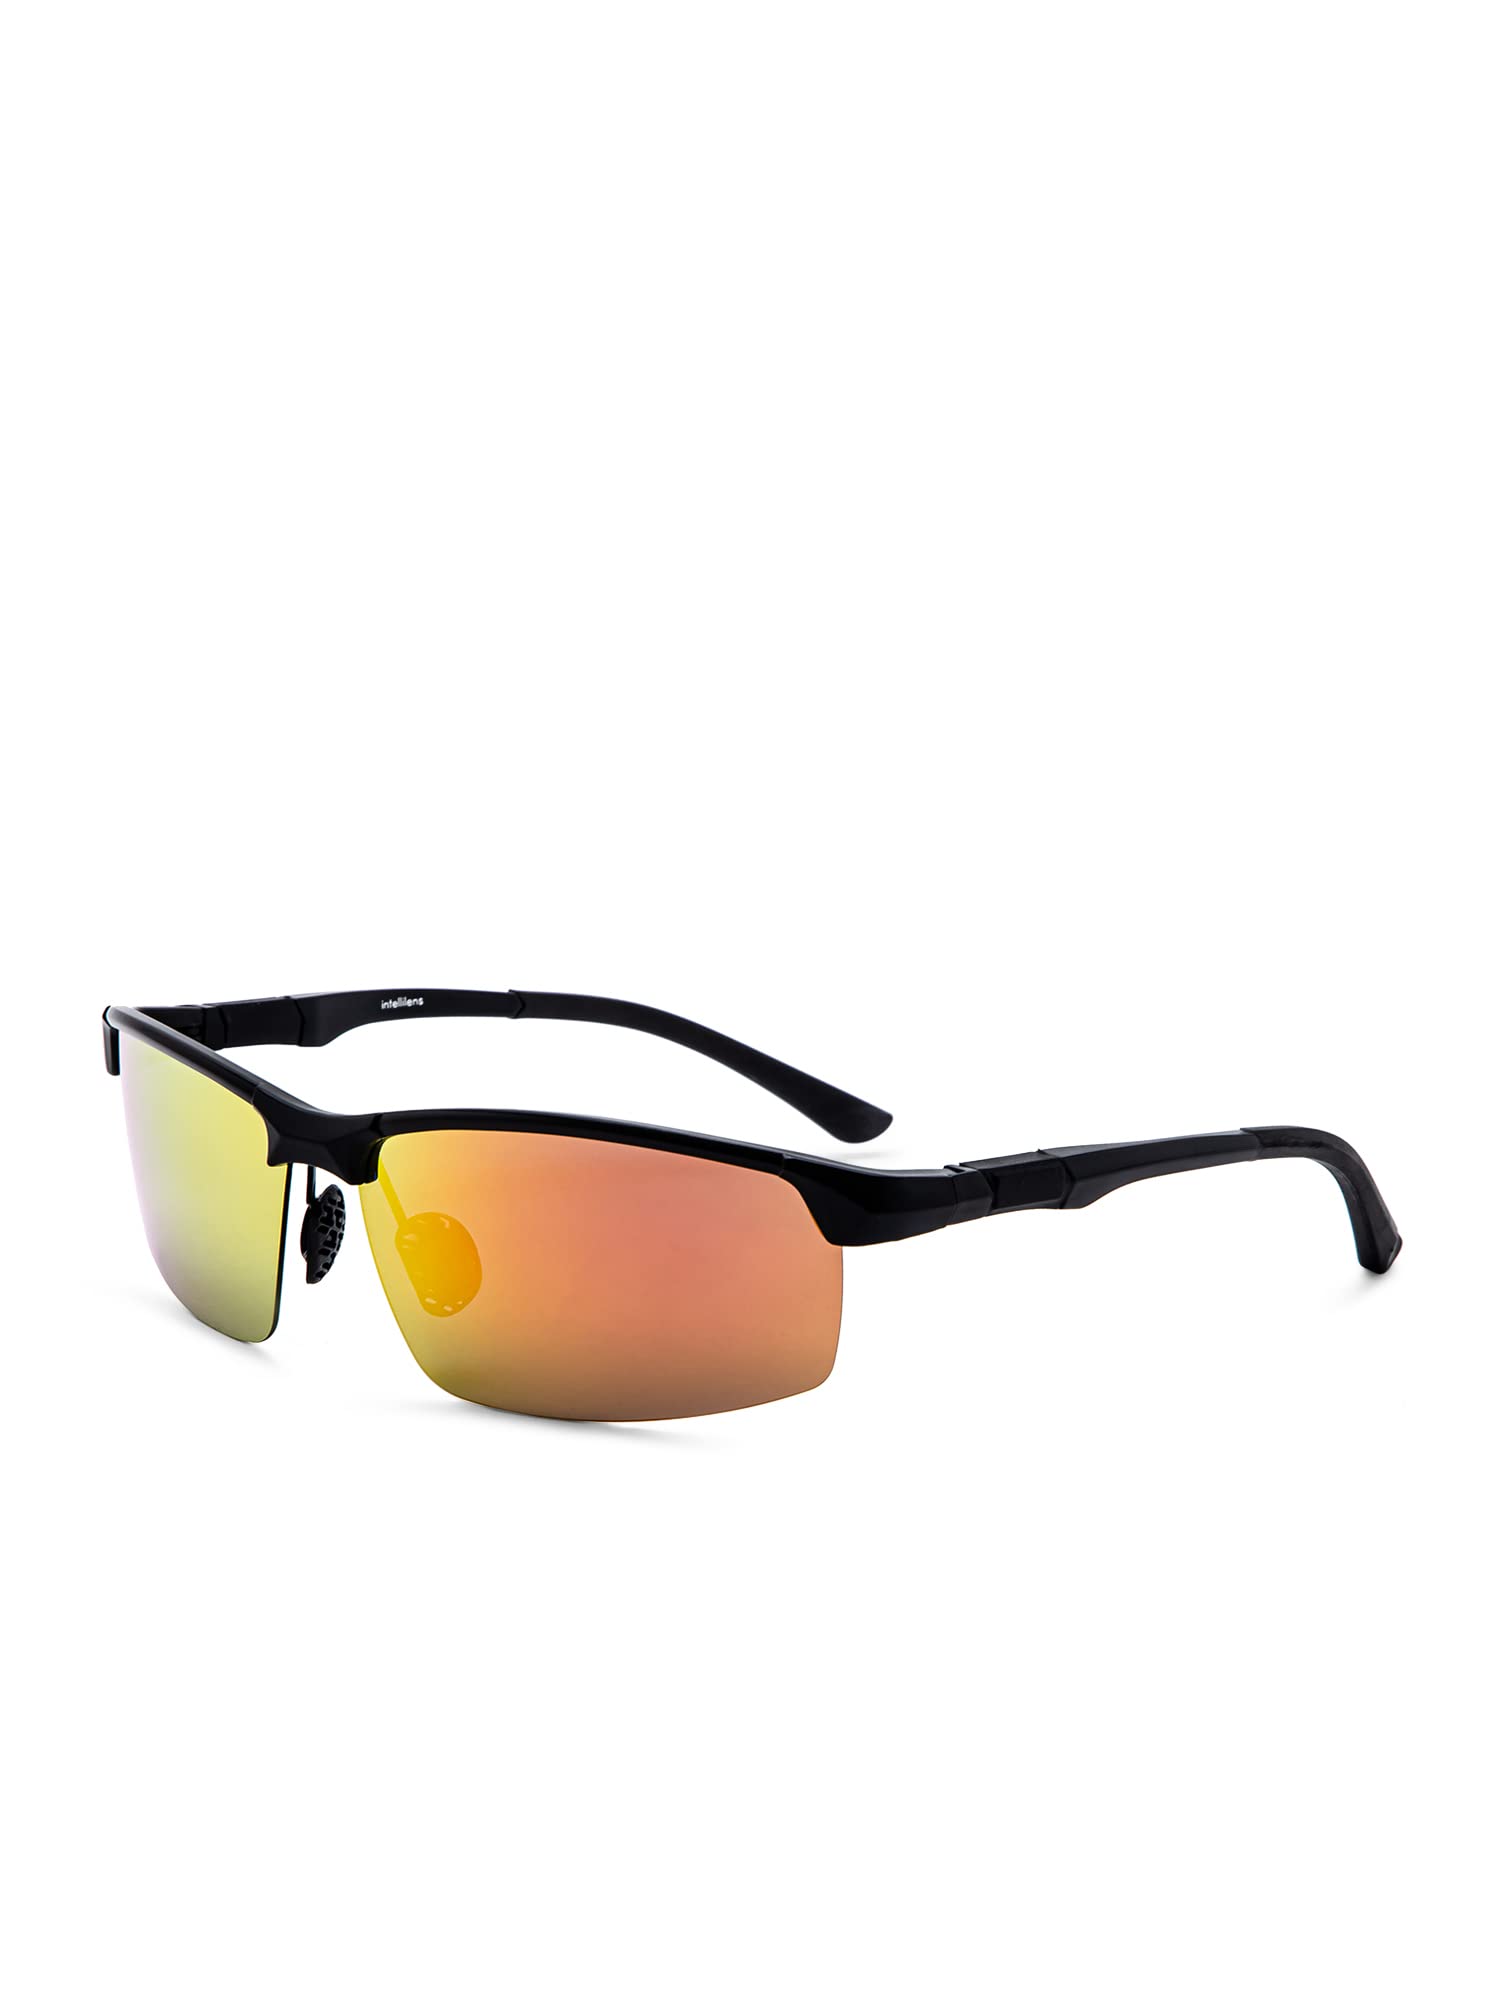 Intellilens Sports Sunglasses For Men Black - Pack of 1